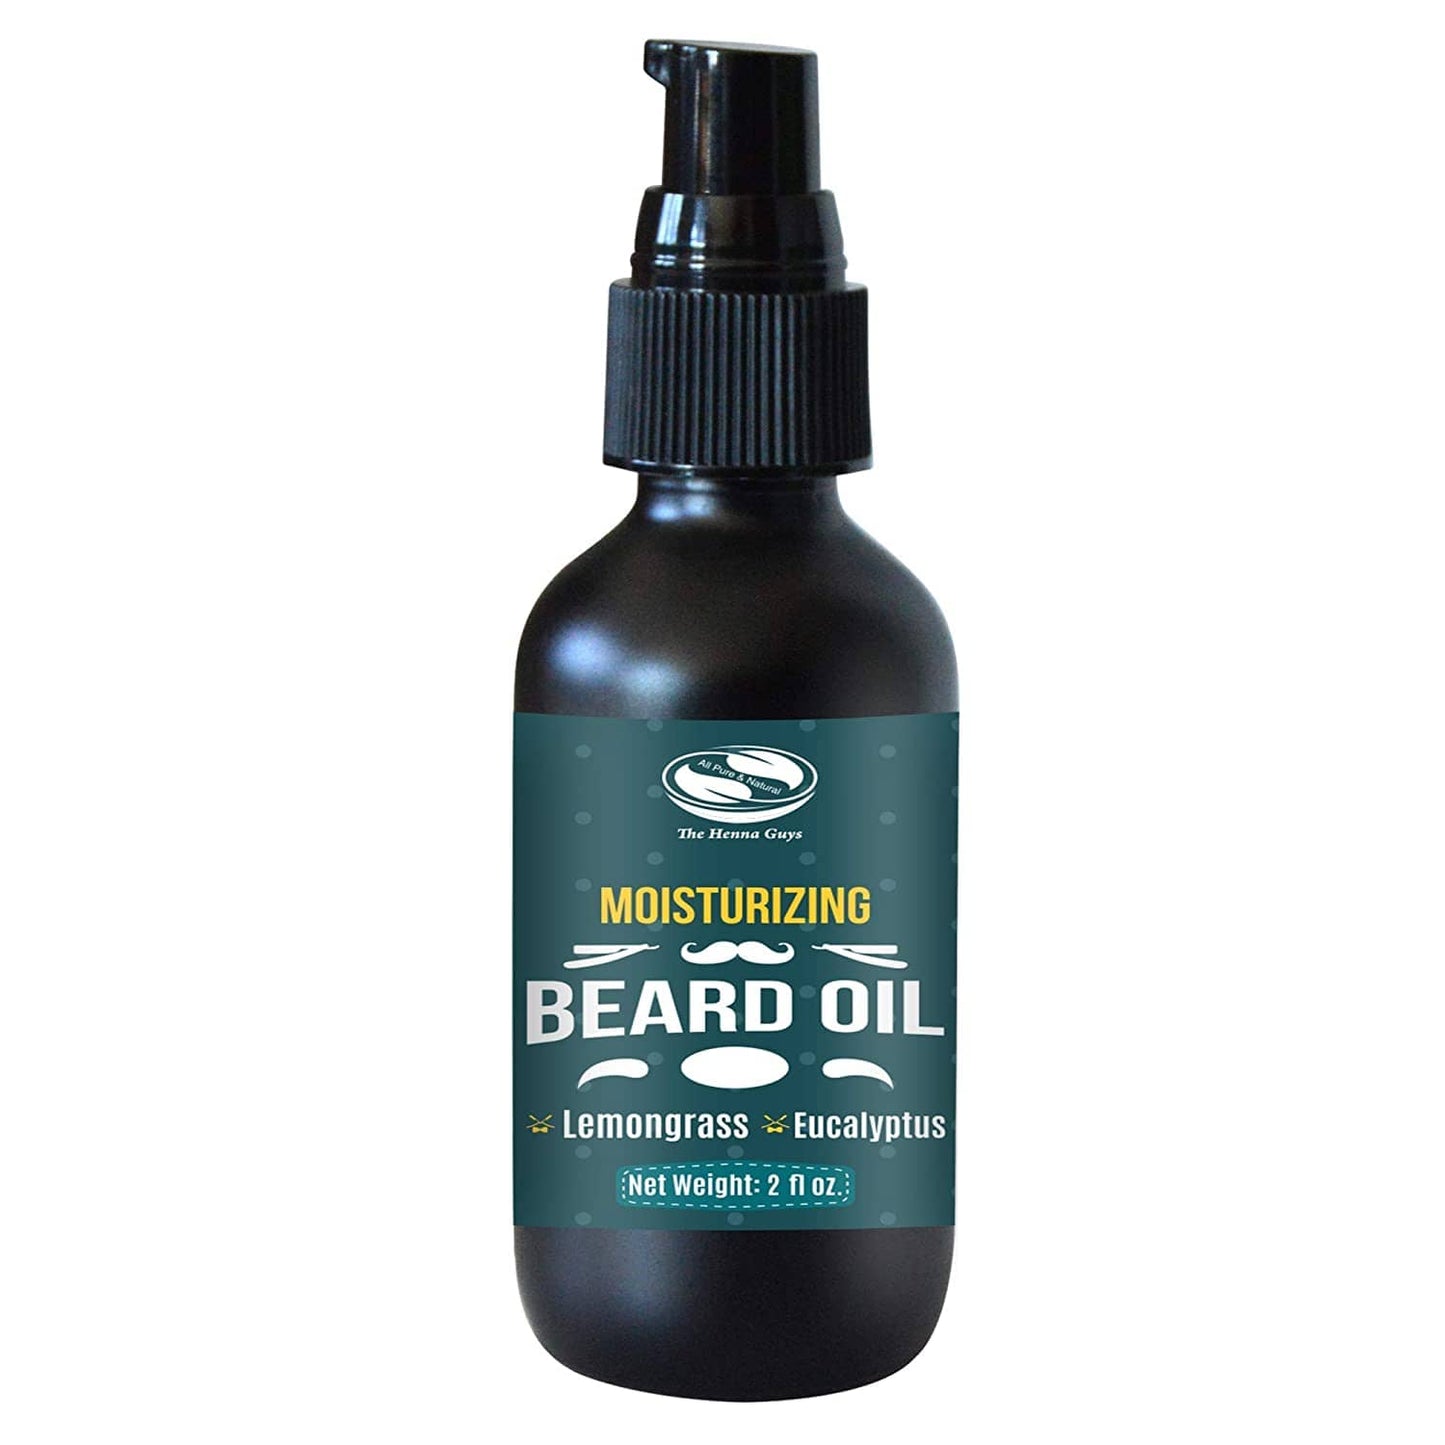 Beard Oil - Thicker & Fuller Beard